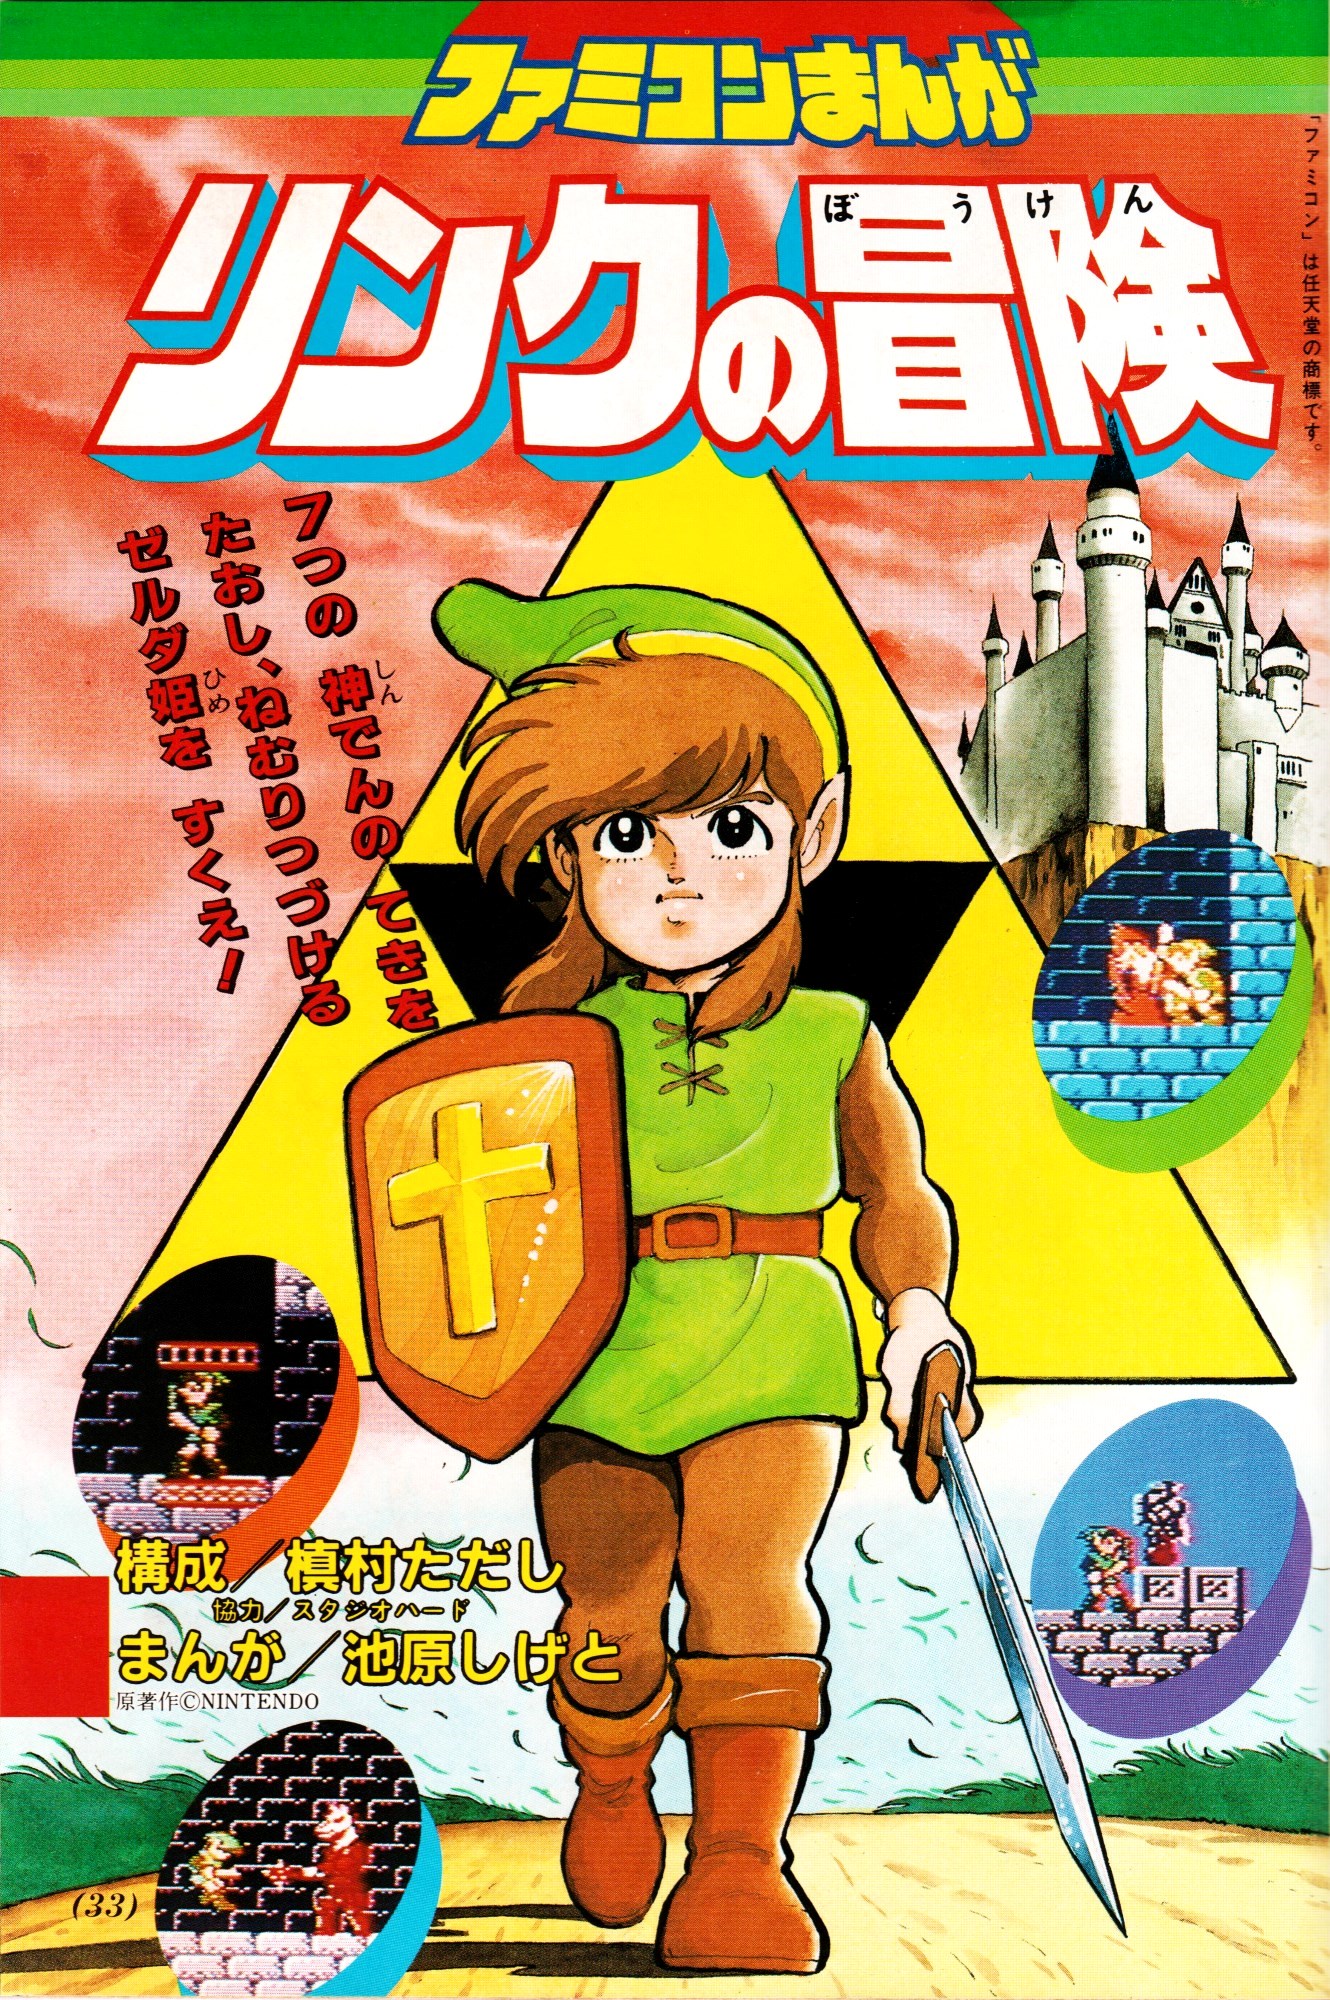 Zelda II: The Adventure of Link (IKEHARA Shigeto)